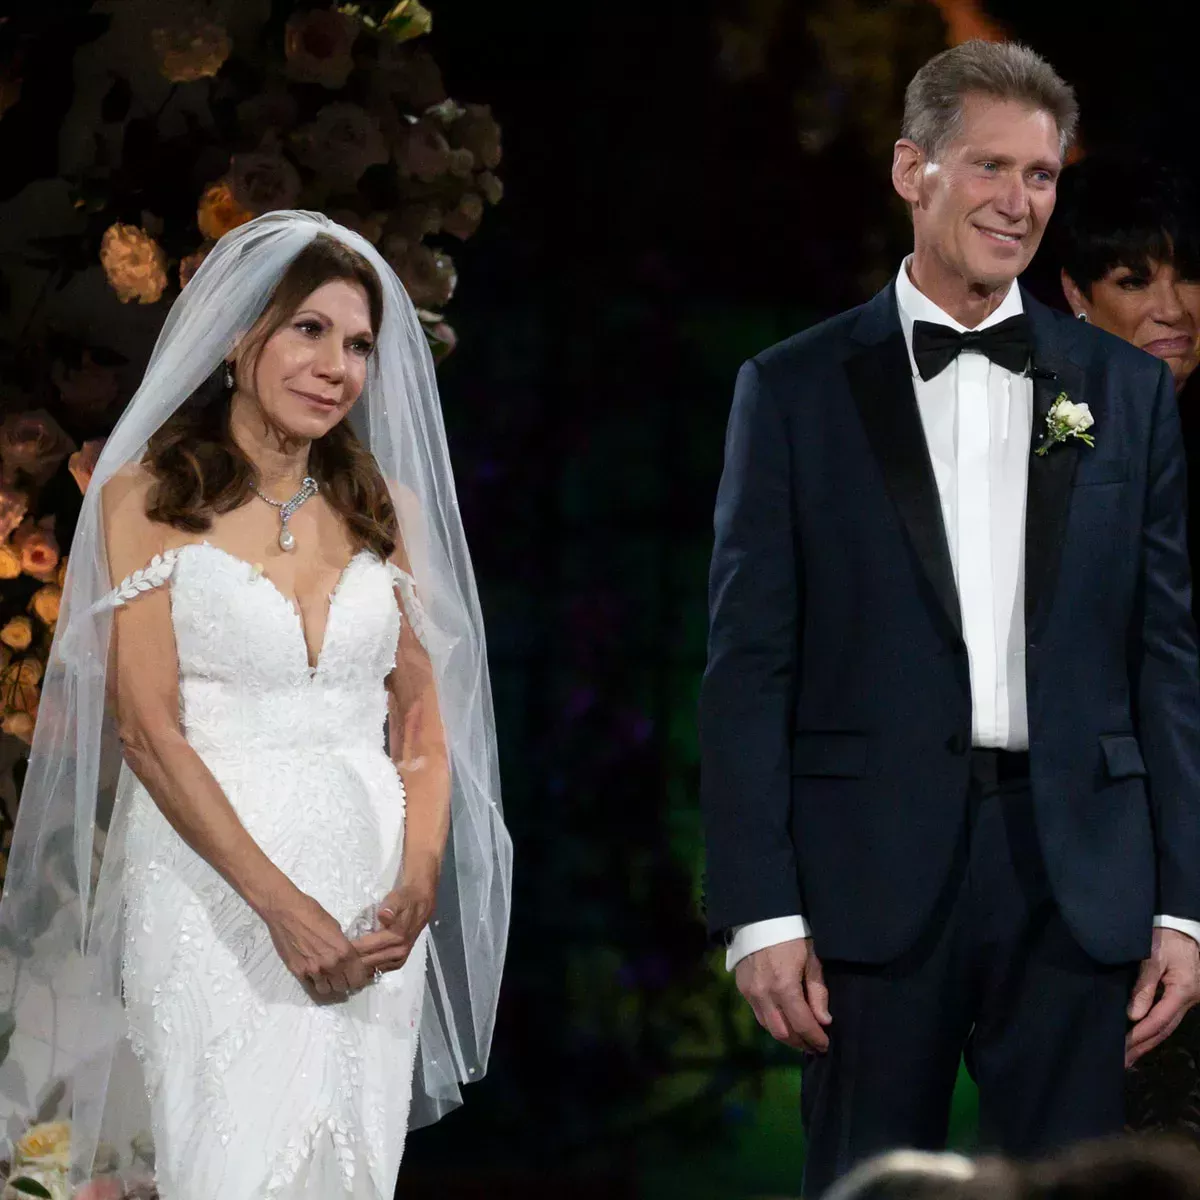 El soltero de oro Gerry Turner se casa con Theresa Nist en una boda televisada en directo